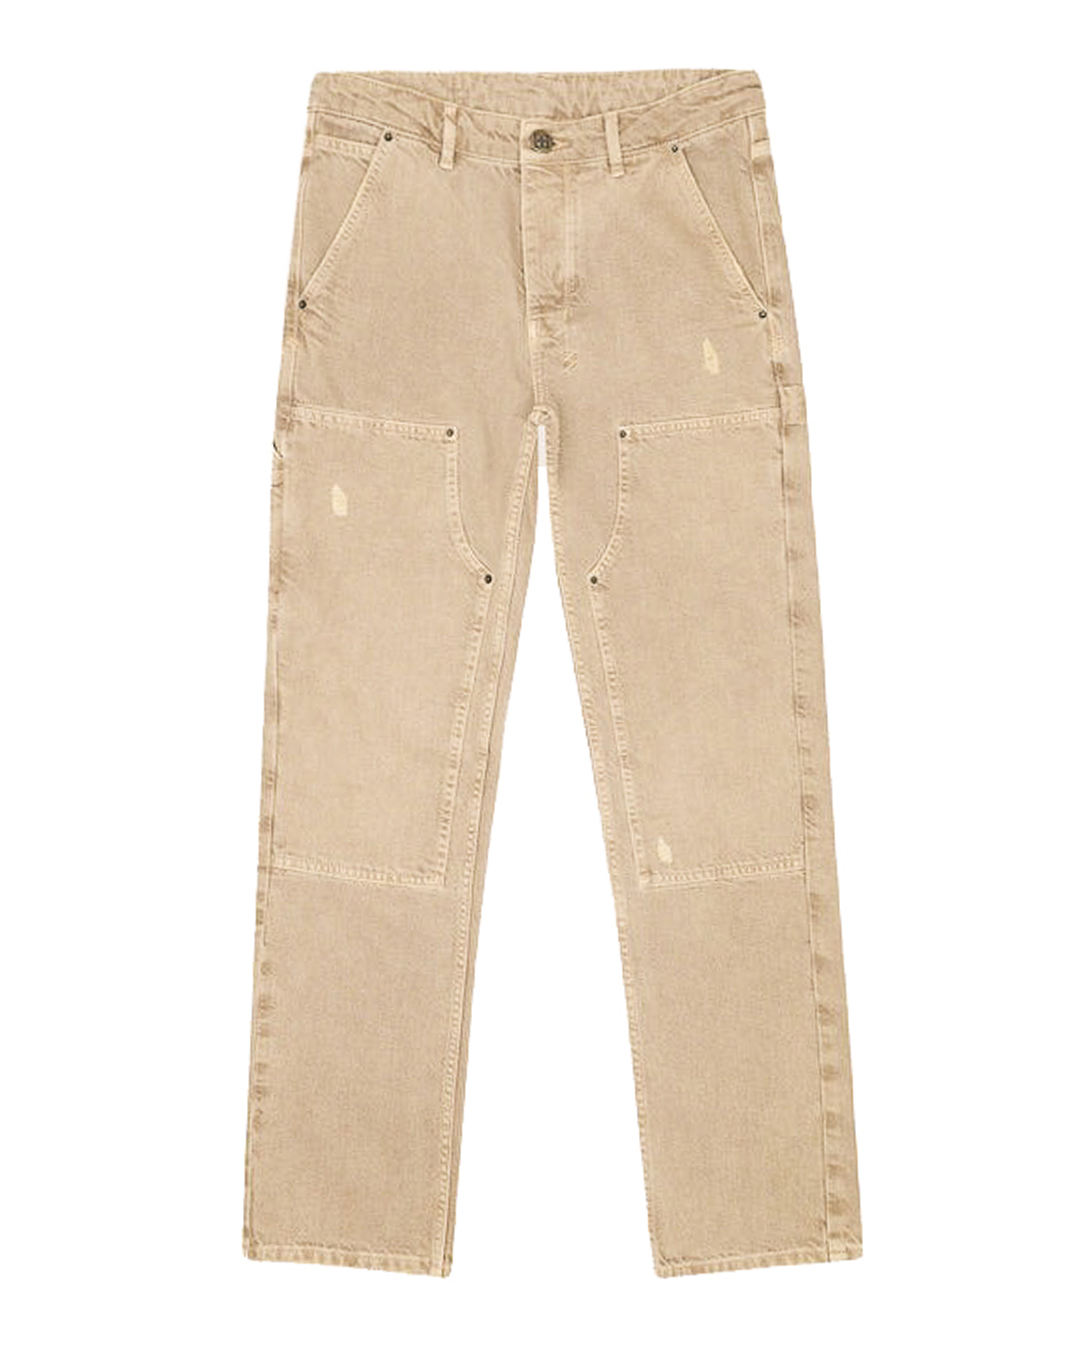 джинсы KSUBI халат мужской махровый 100% хлопок коричневый l xl 48 50 barkas aria ai 1905026